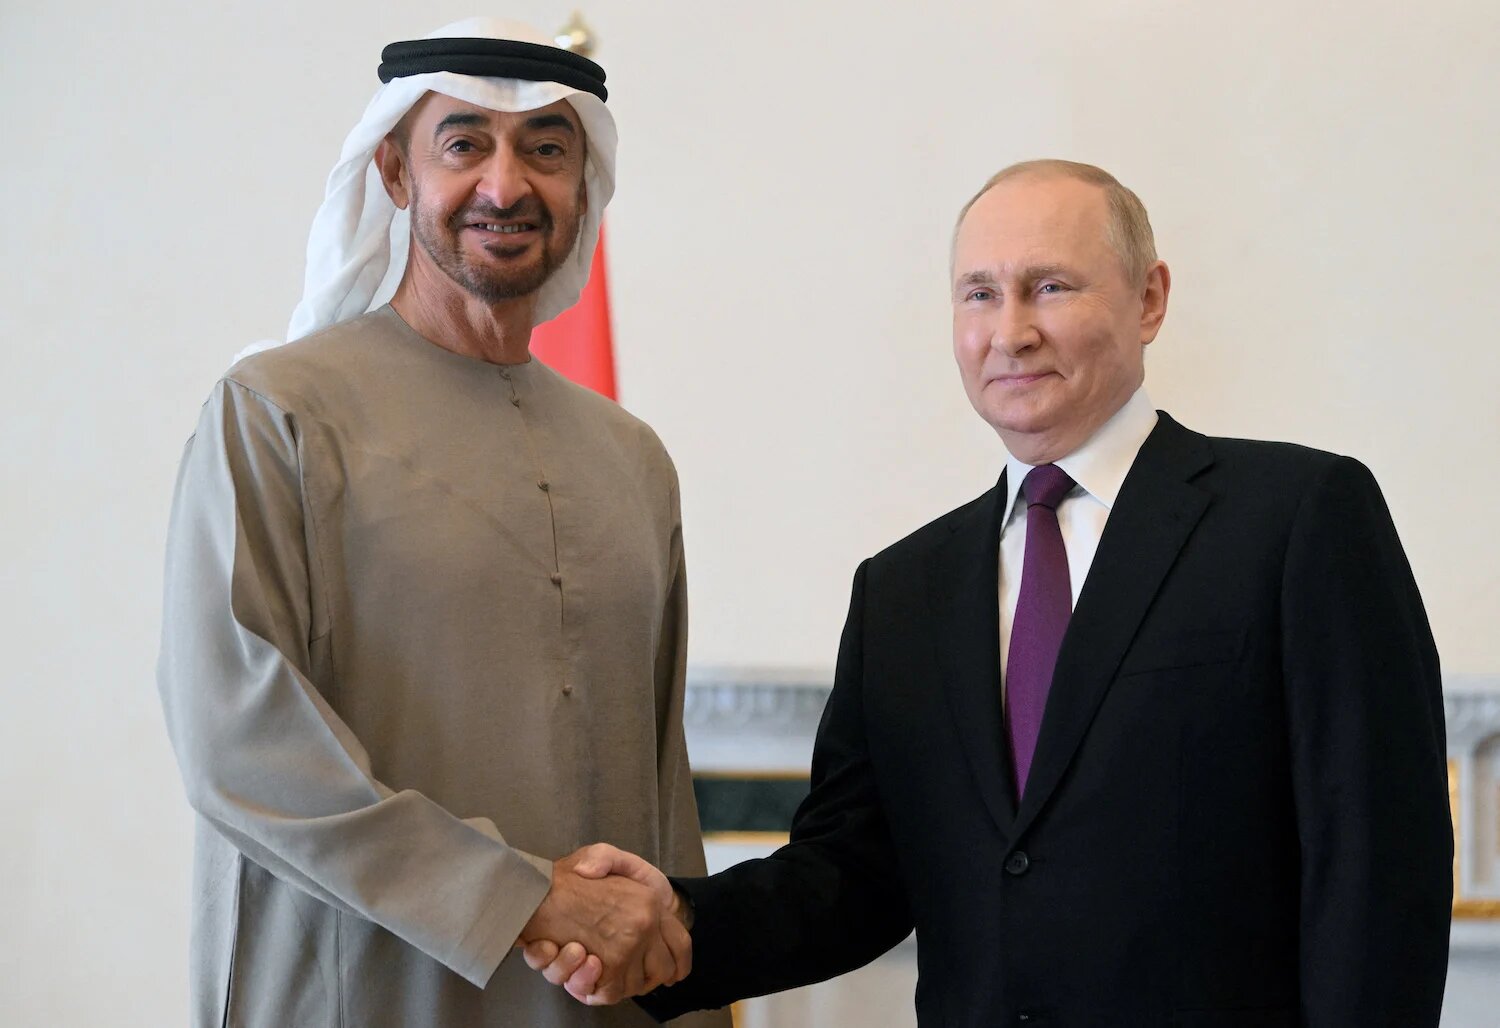 Le président russe, Vladimir Poutine, serre la main du président des EAU, cheikh Mohammed ben Zayed al-Nahyane, lors d’une réunion à Saint-Pétersbourg, en Russie, le 11 octobre 2022. (Reuters)